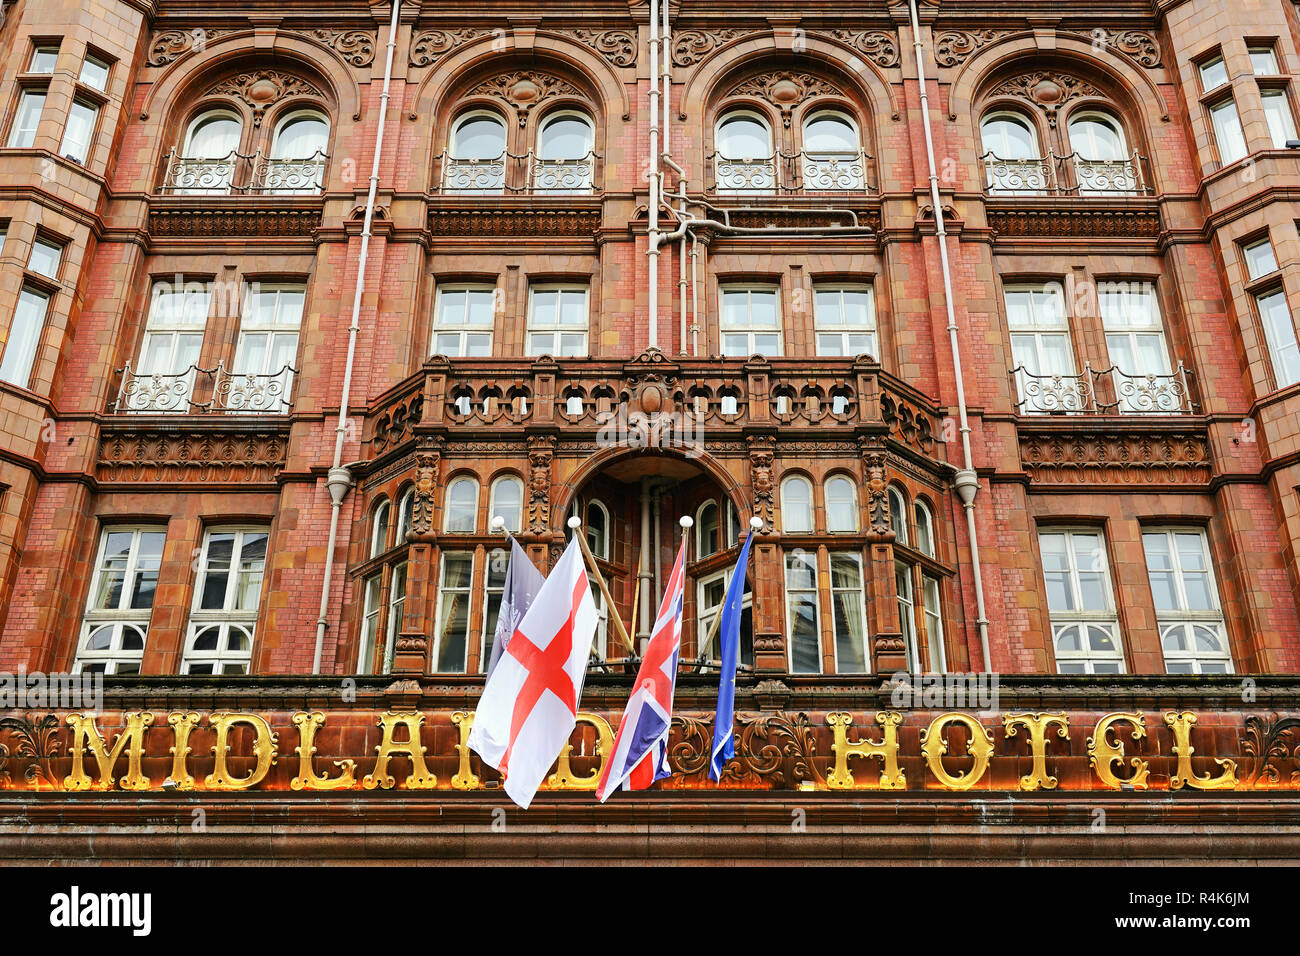 El Hotel Midland, de Manchester, Inglaterra, Reino Unido Foto de stock